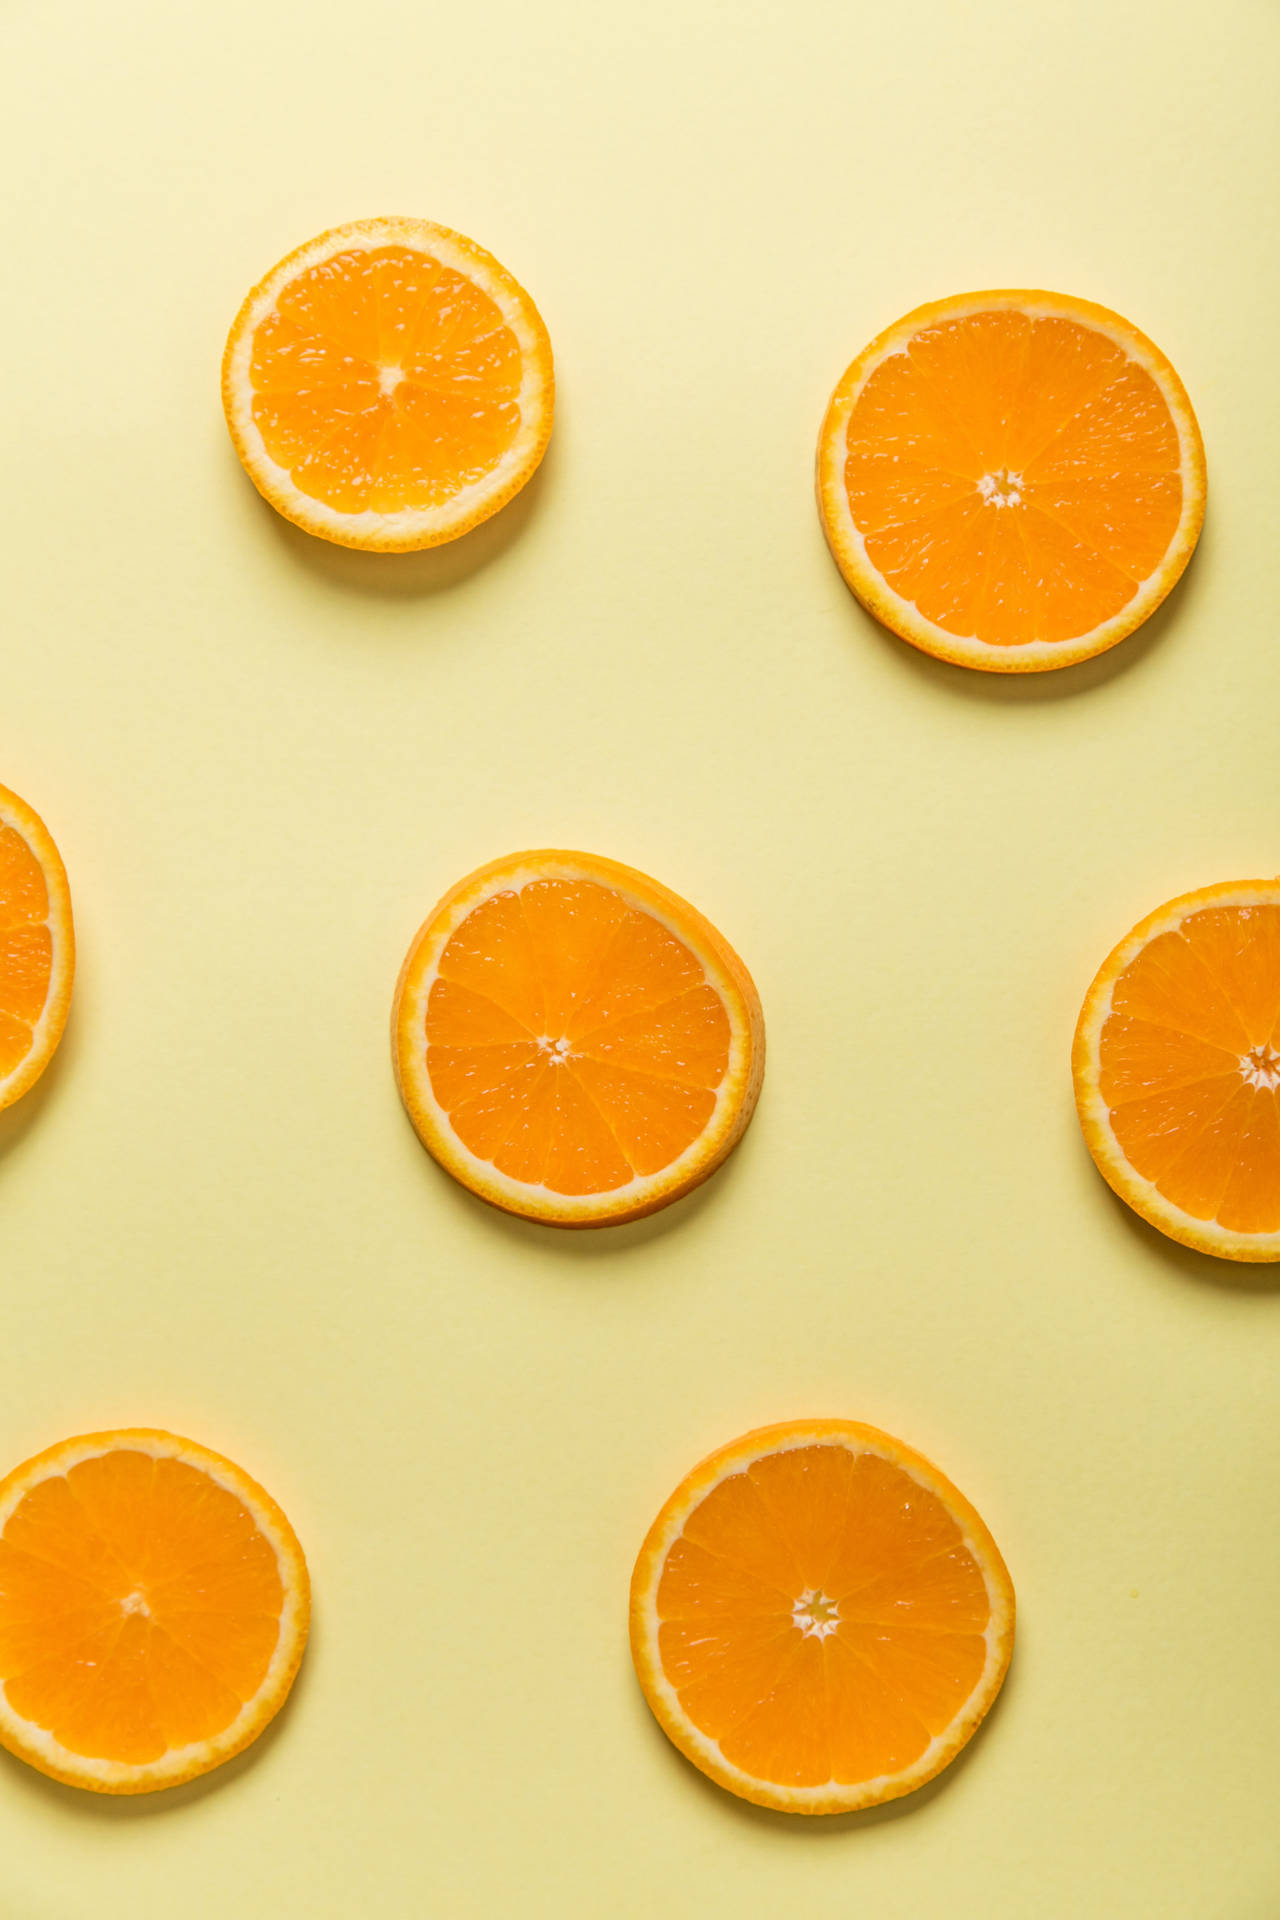 Orangeslice Top Iphone: Apelsinskiva Toppen Iphone Wallpaper